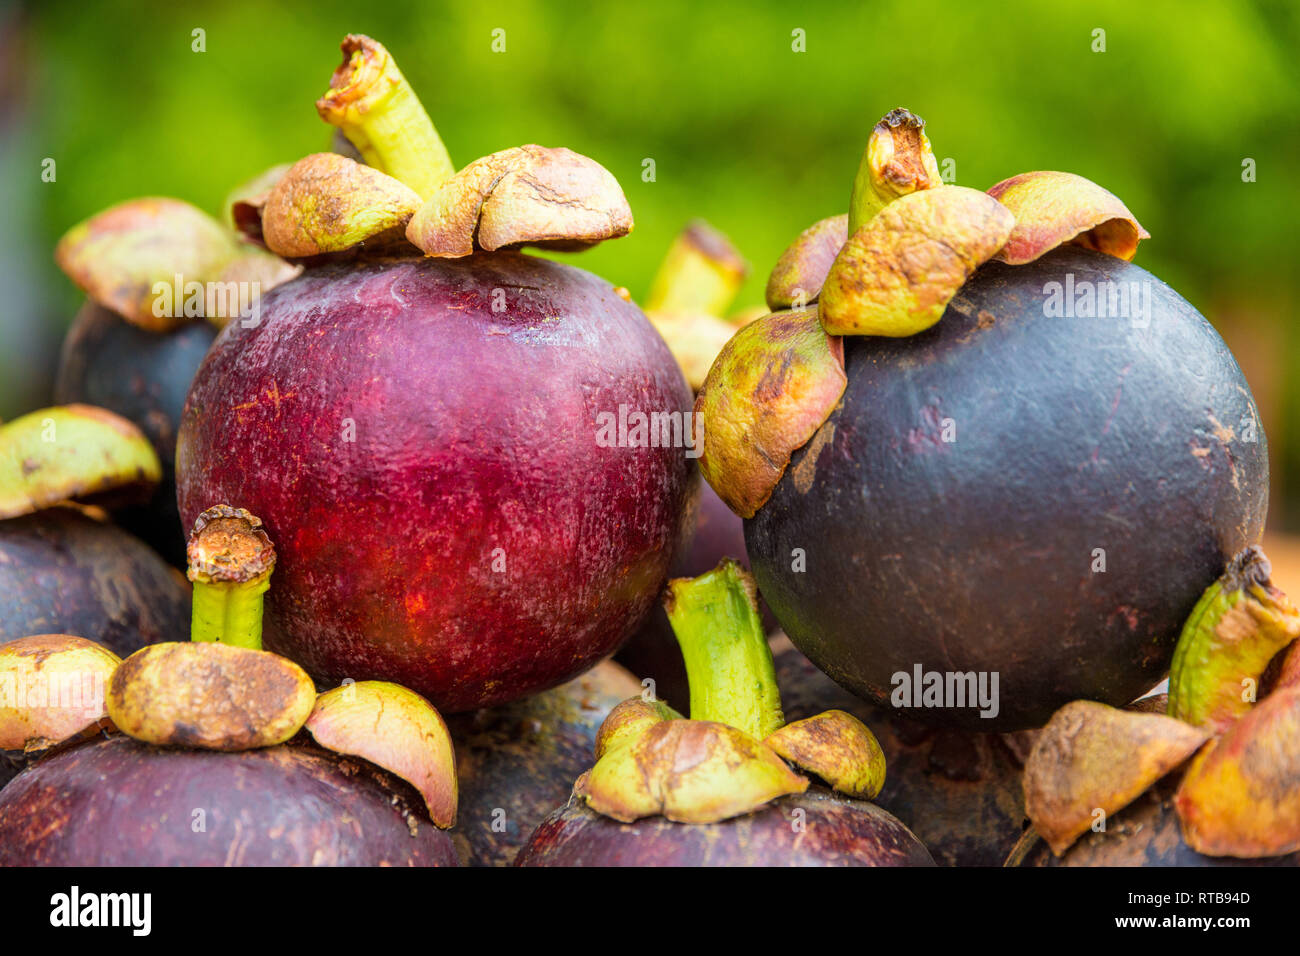 Schönes Bild von zwei reife rötlich-violetten Mangostane (Garcinia mangostana) Früchte, übereinander gestapelt. Die Früchte mit ihren grünen Stiele sind... Stockfoto